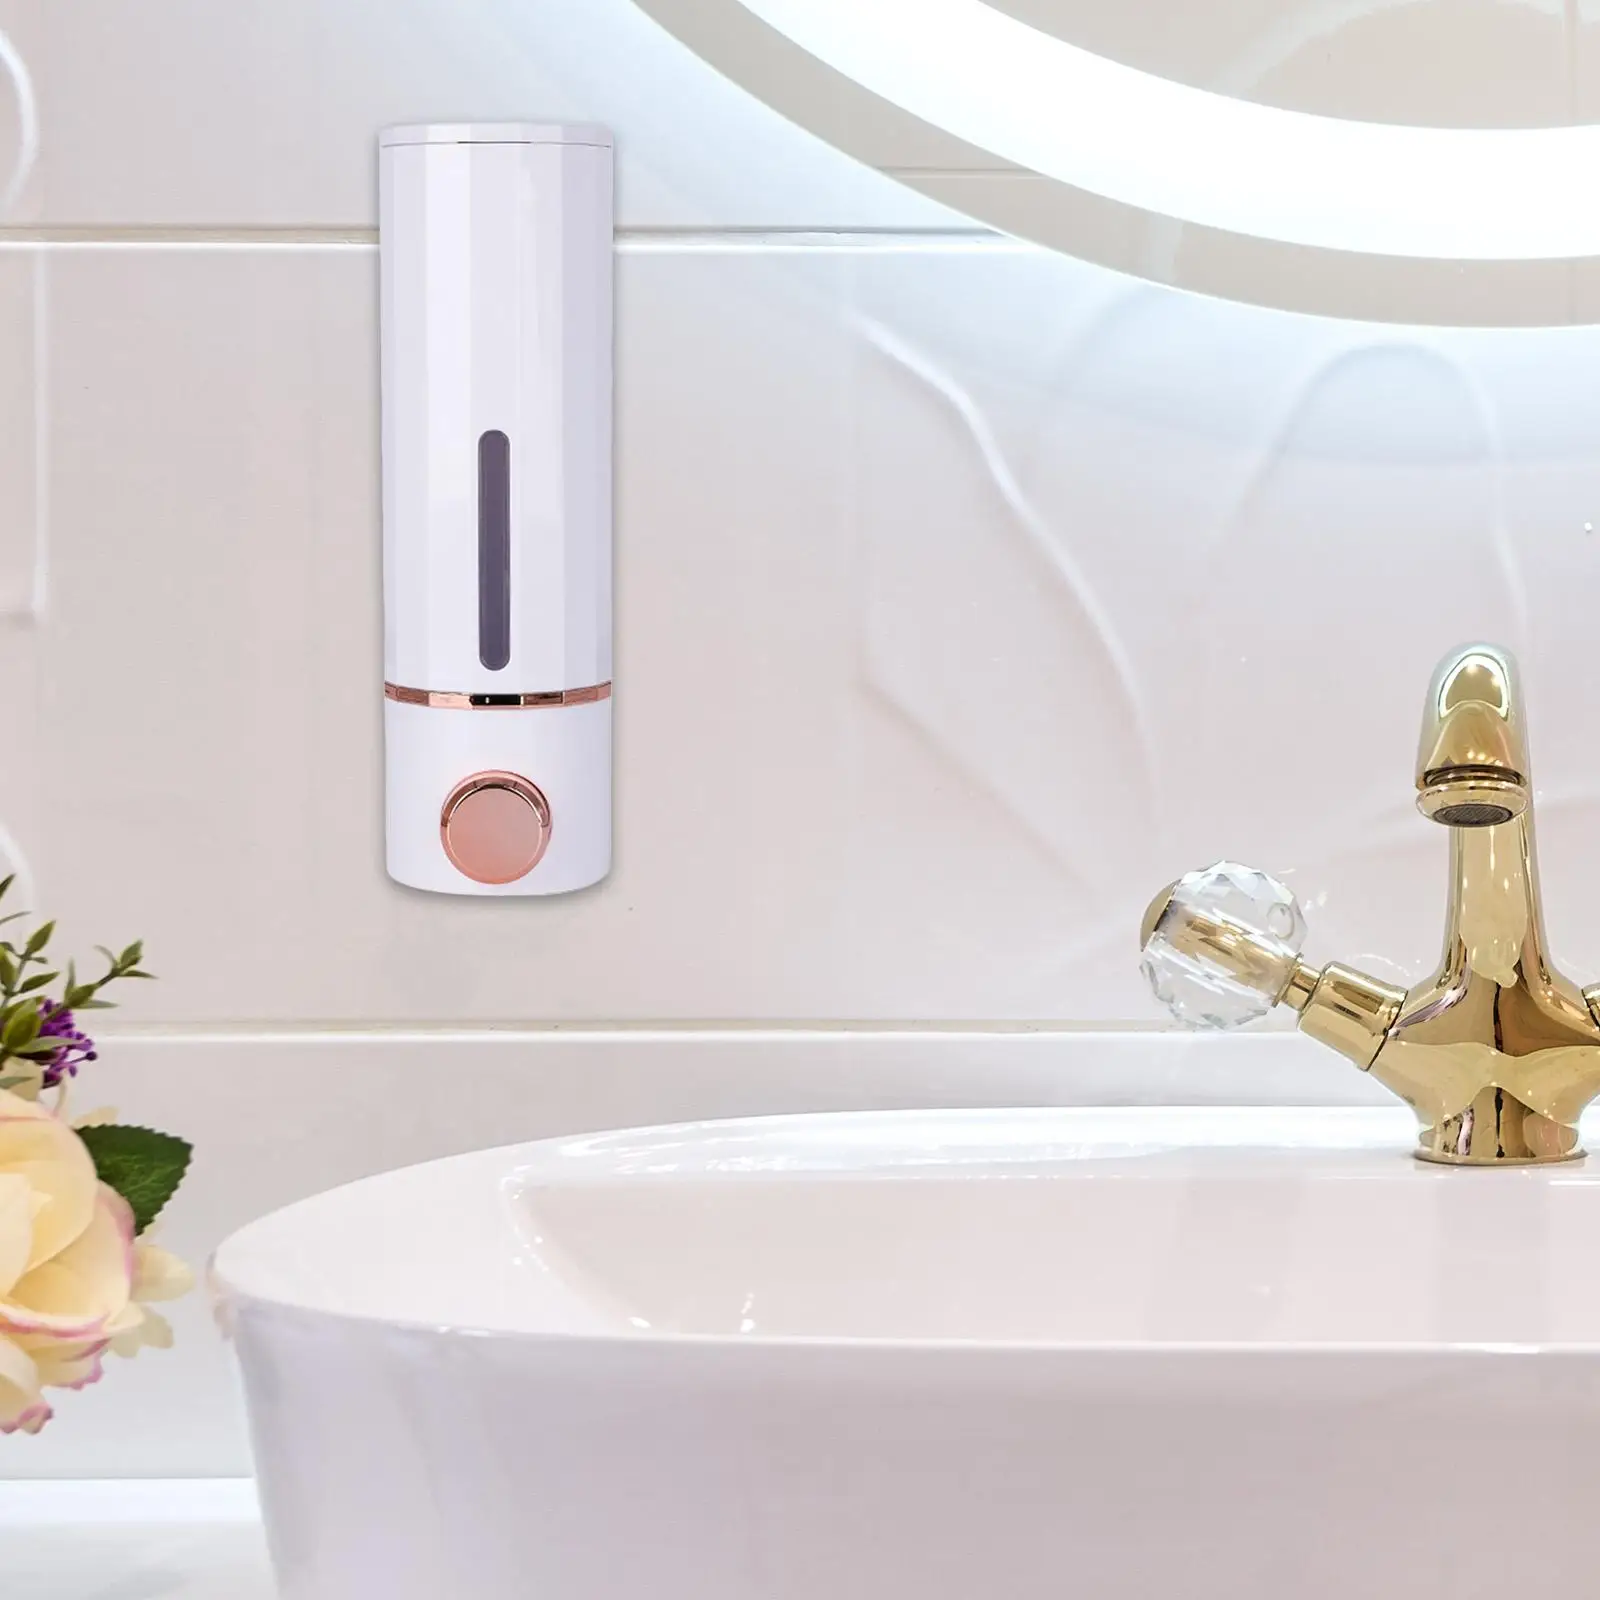 Soap Dispenser Sturdy Convenient Manual Liquid Pump Dispenser for RV Toilet